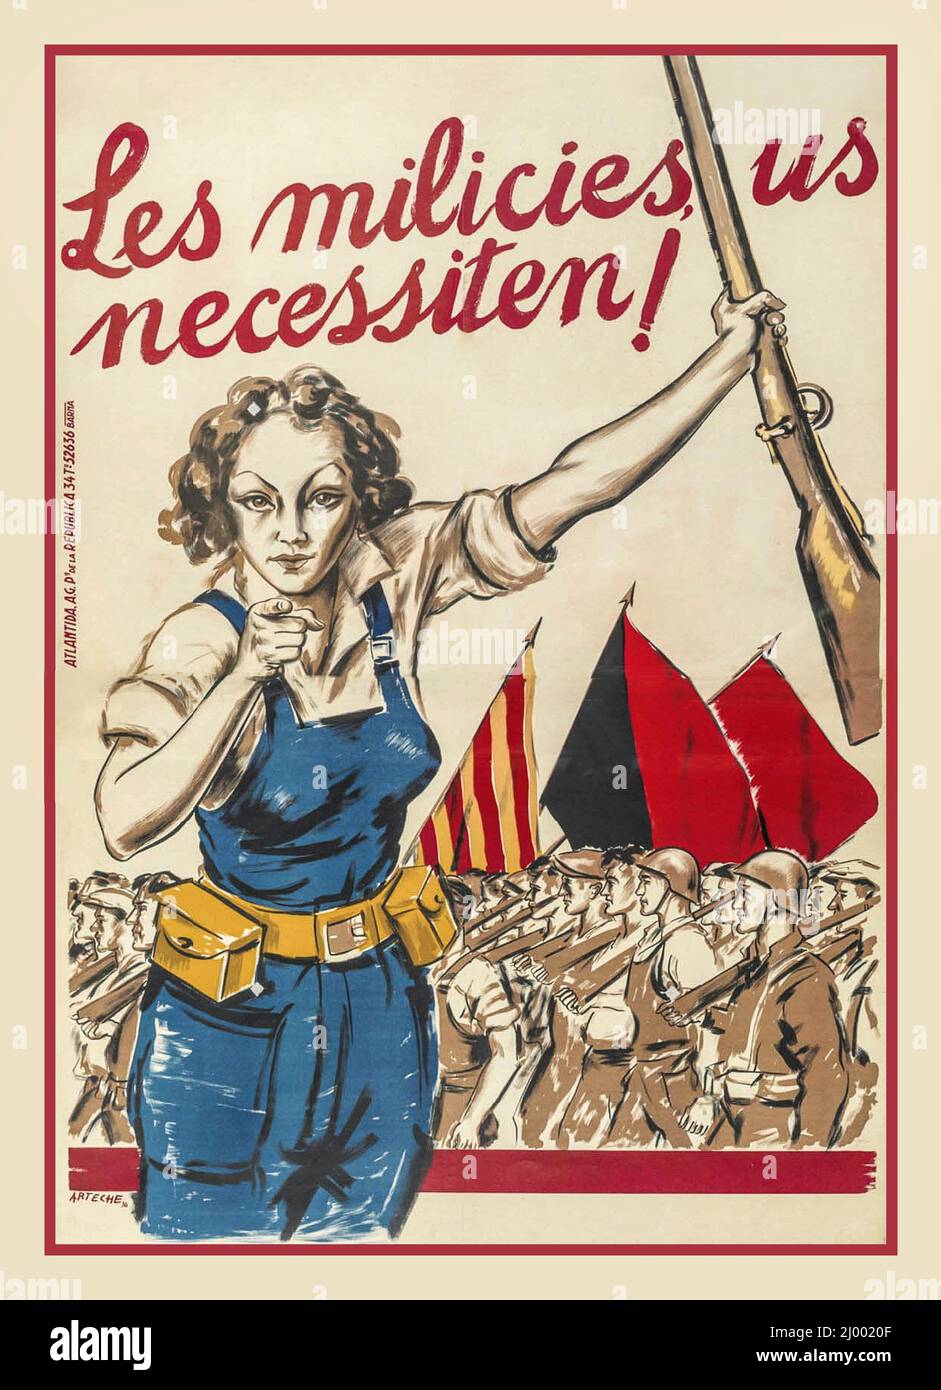 Affiche d'appel de propagande de la guerre civile espagnole « la Milice a besoin de vous ! », affiche républicaine espagnole pour la guerre civile représentée par la classe ouvrière espagnole qui combat contre les forces combinées du général Franco, Mussolini et Hitler (1936) Banque D'Images